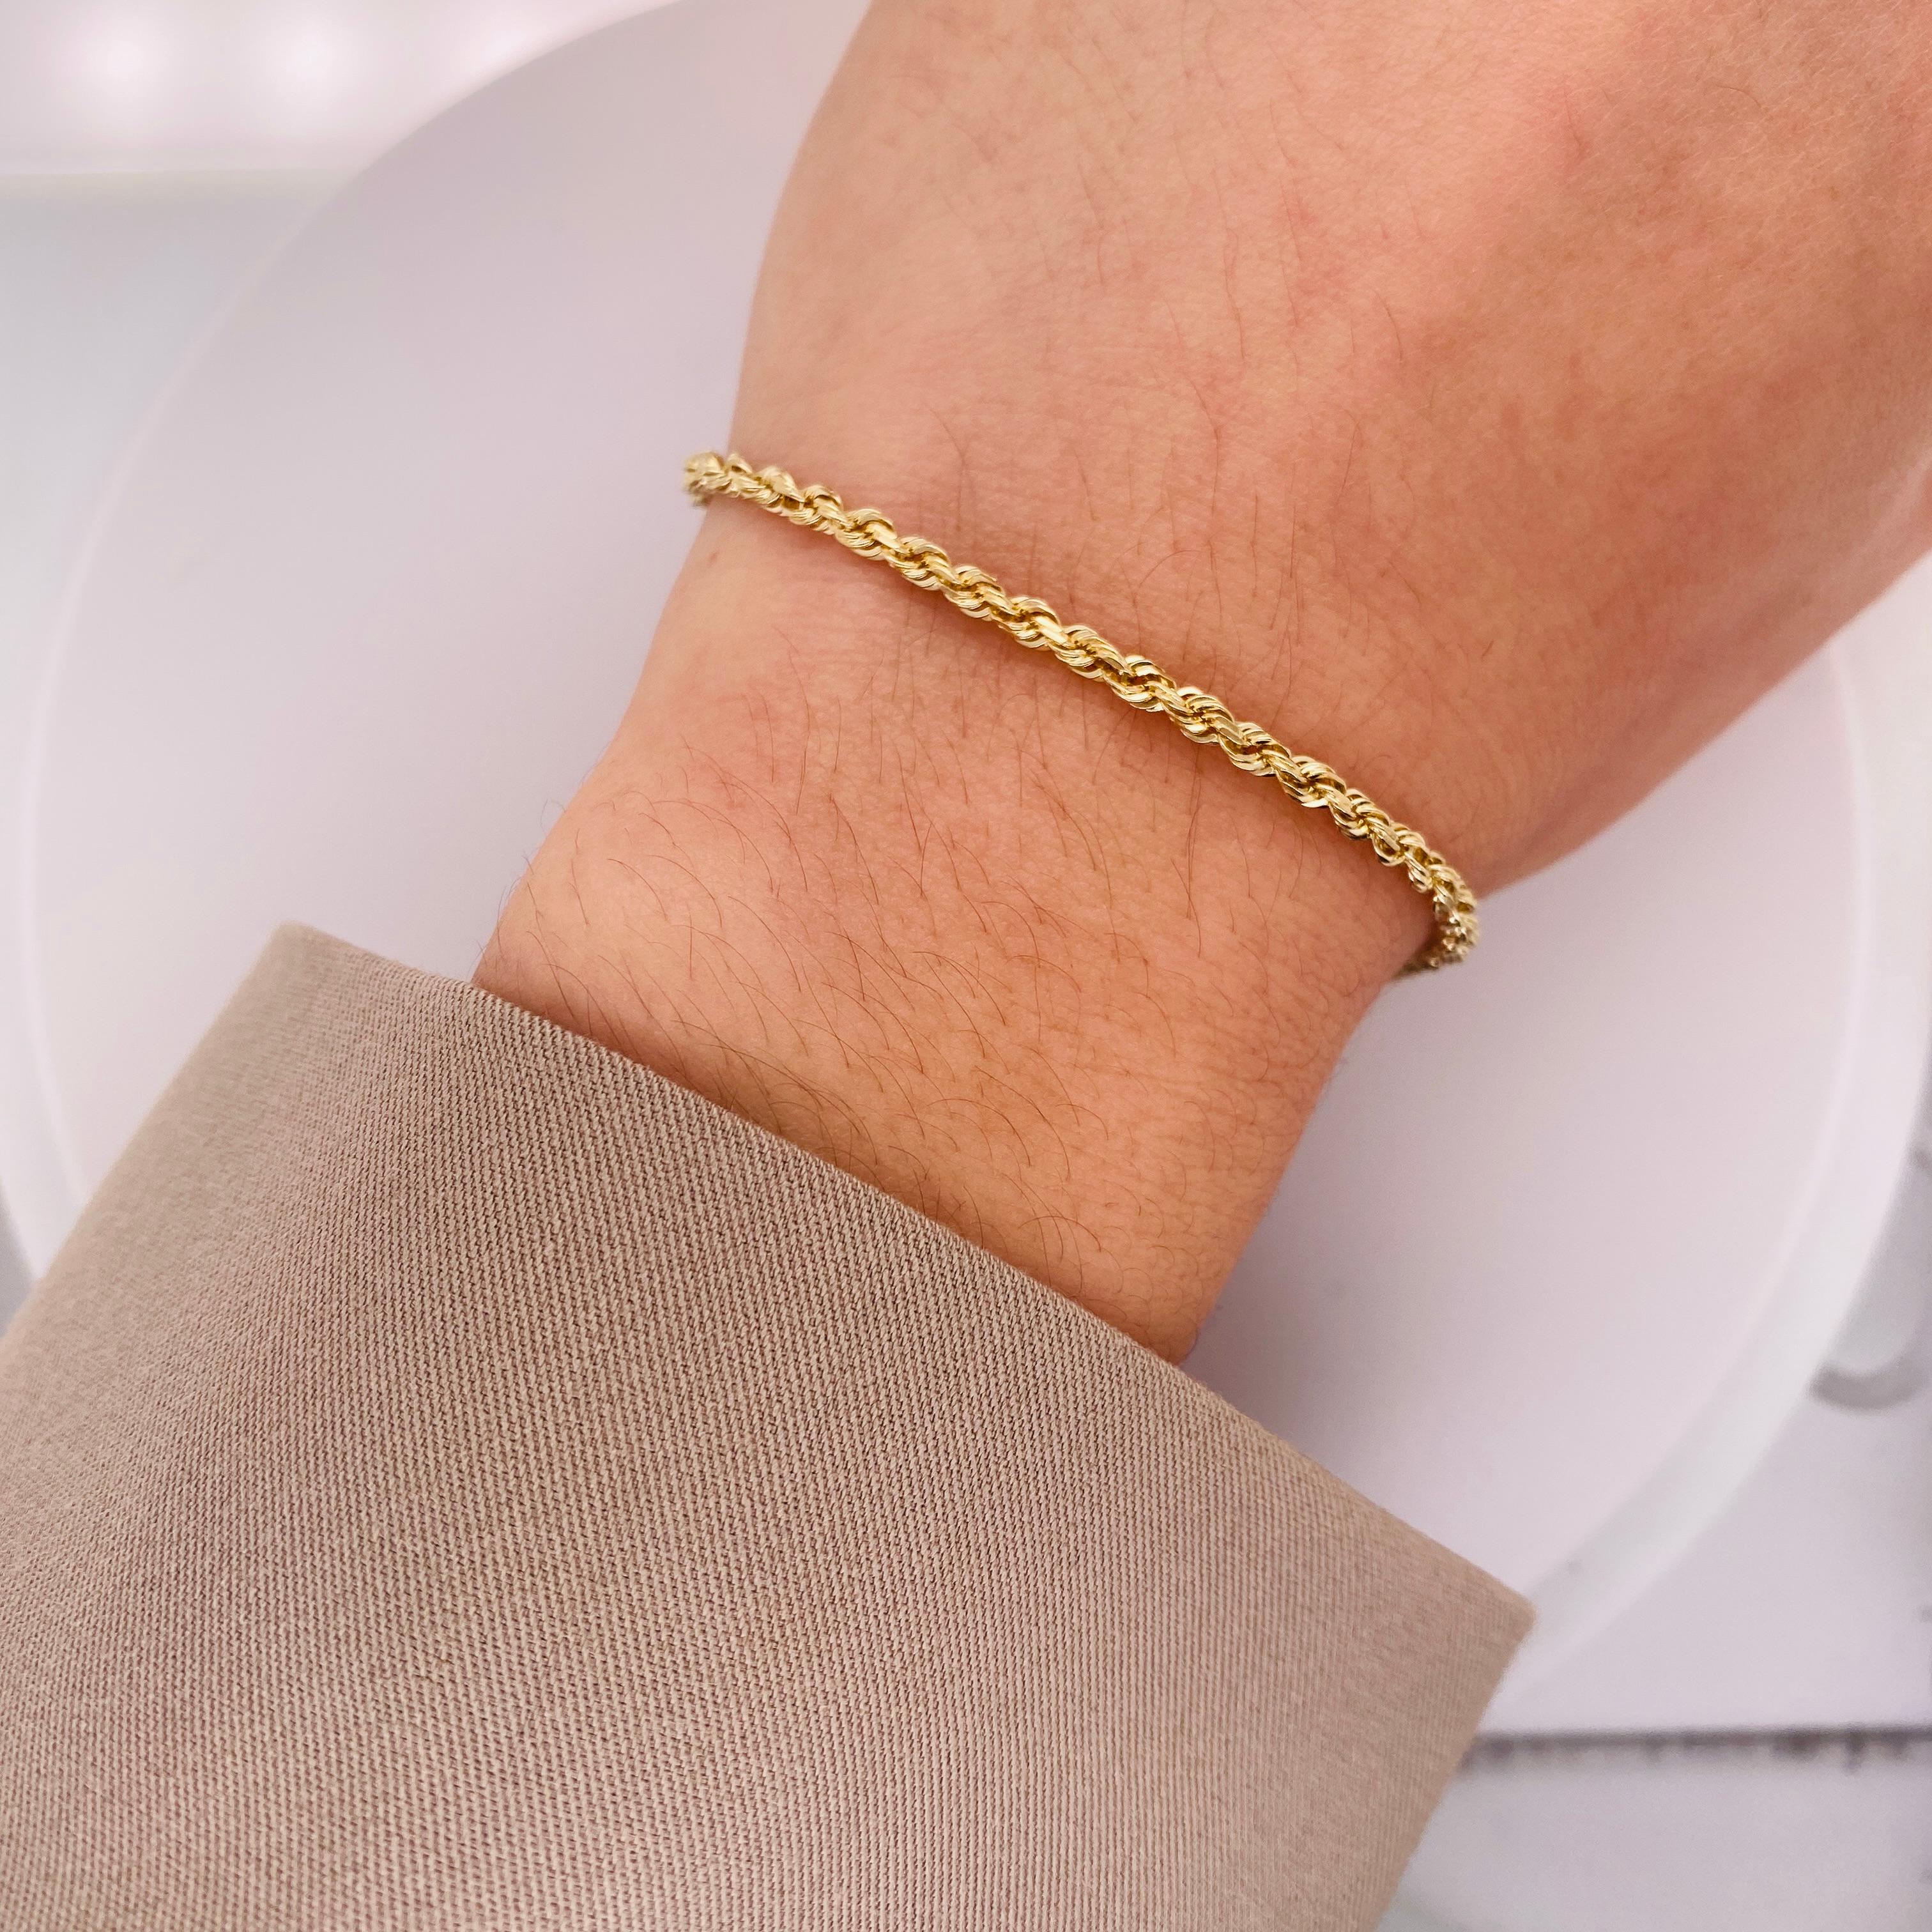 Ce charmant bracelet fera un cadeau parfait pour votre bien-aimé(e) ou pour vous-même ! Magnifiquement élancé et confortable, ce bracelet à chaîne en corde est le complément idéal de toute collection de bijoux ! La forme arrondie et torsadée crée